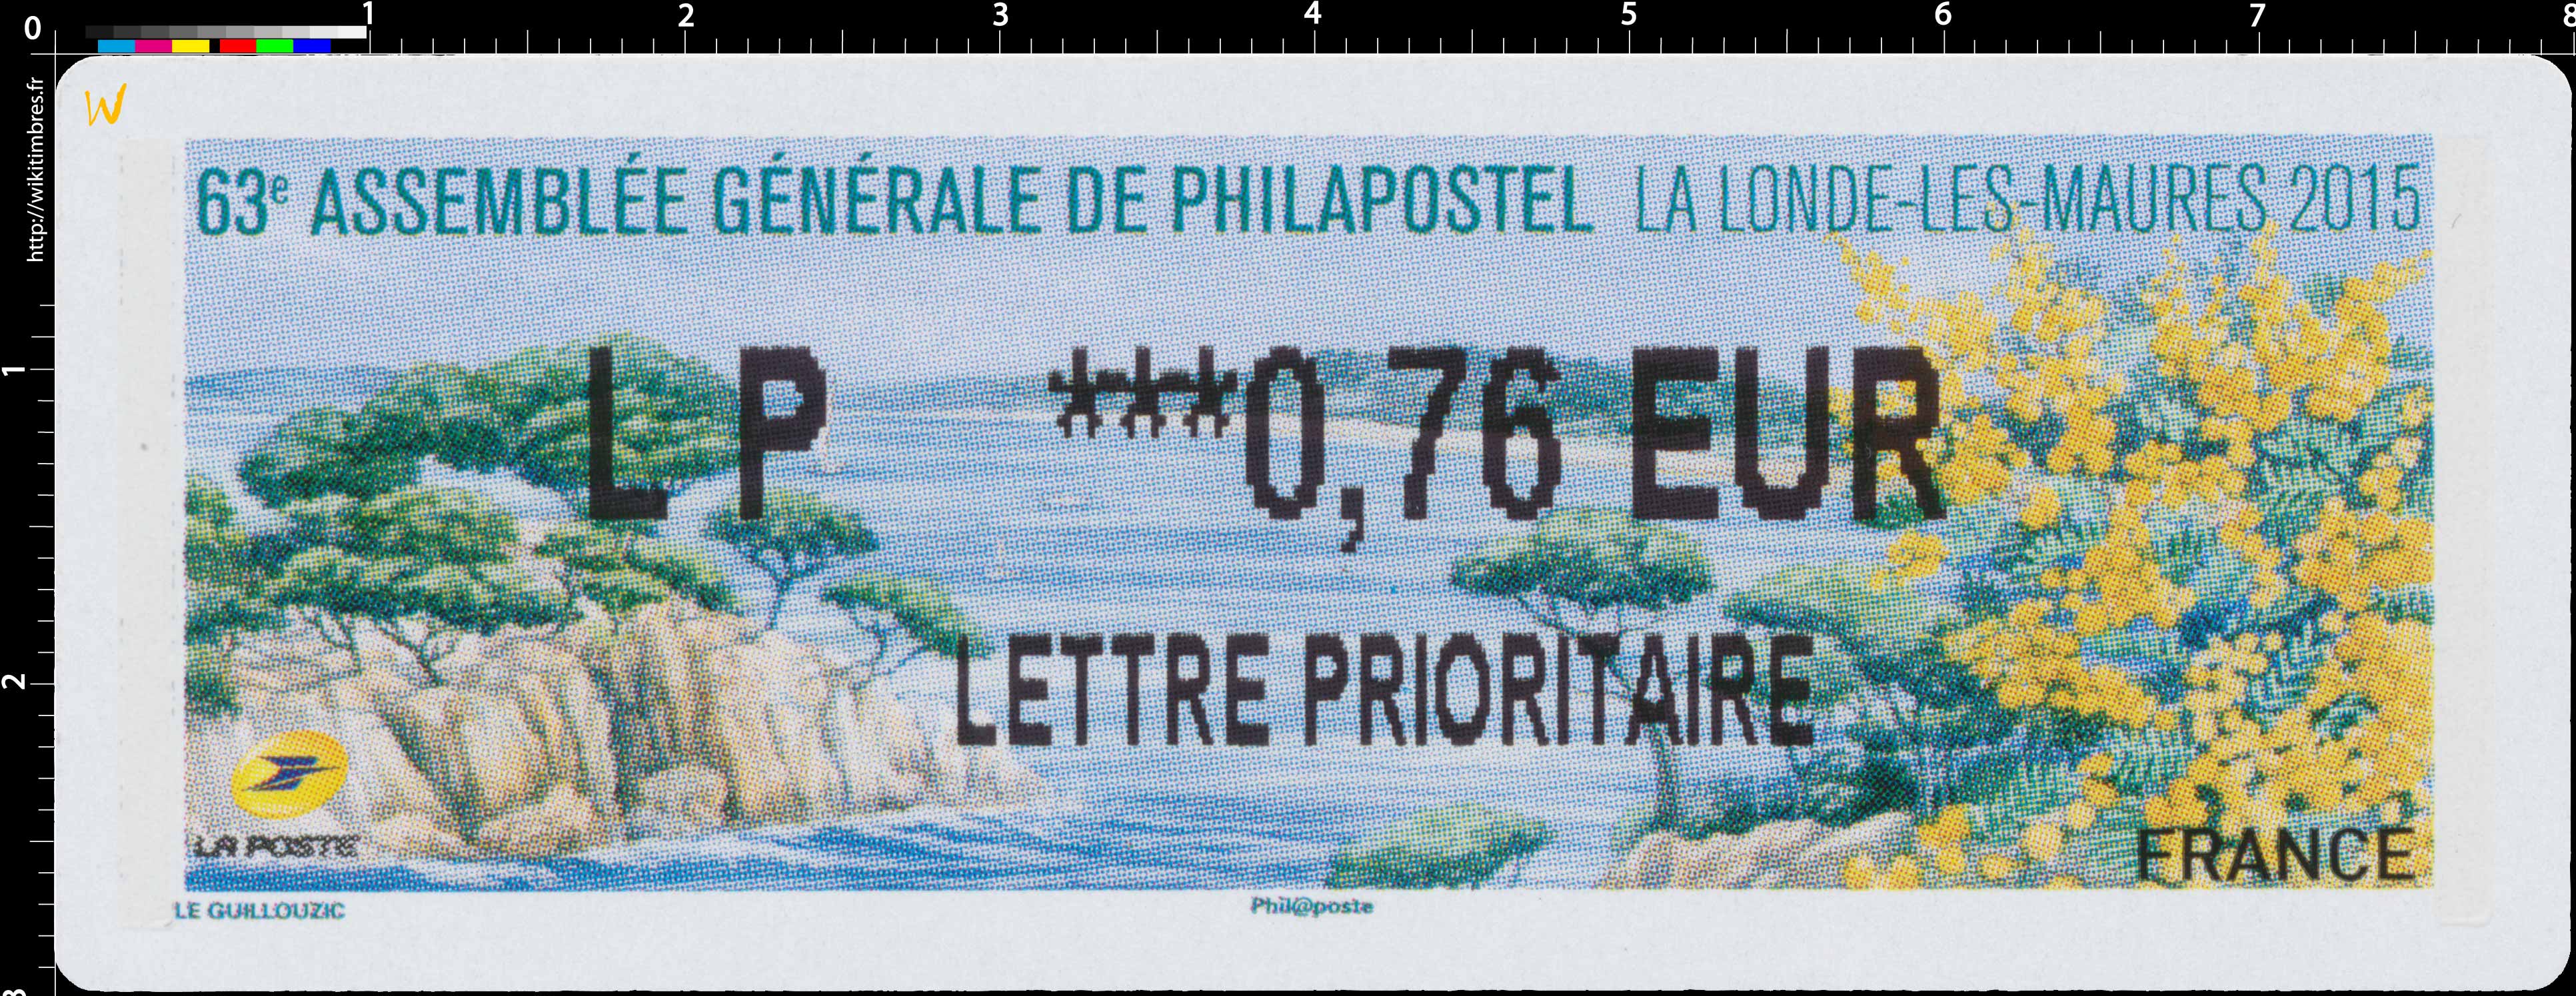 63e assemblée générale Philapostel - La Londe-les-Maures 2015 